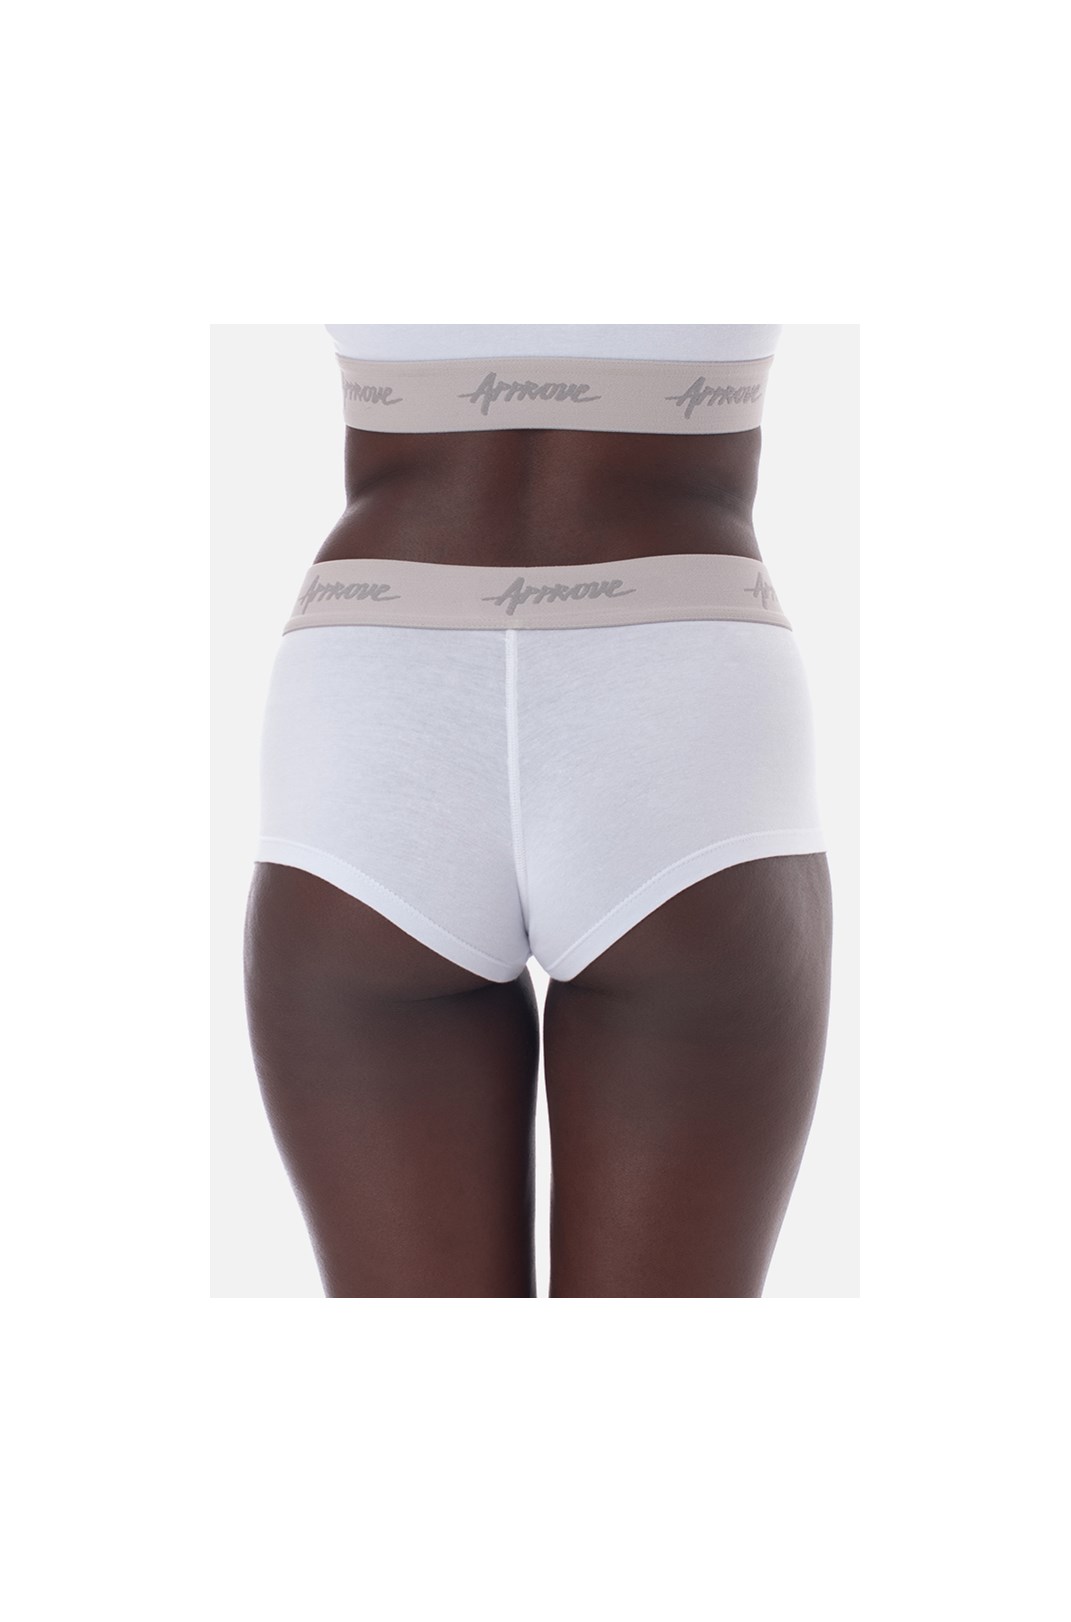 Shorts Underwear Approve Branco Com Cinza - Approve